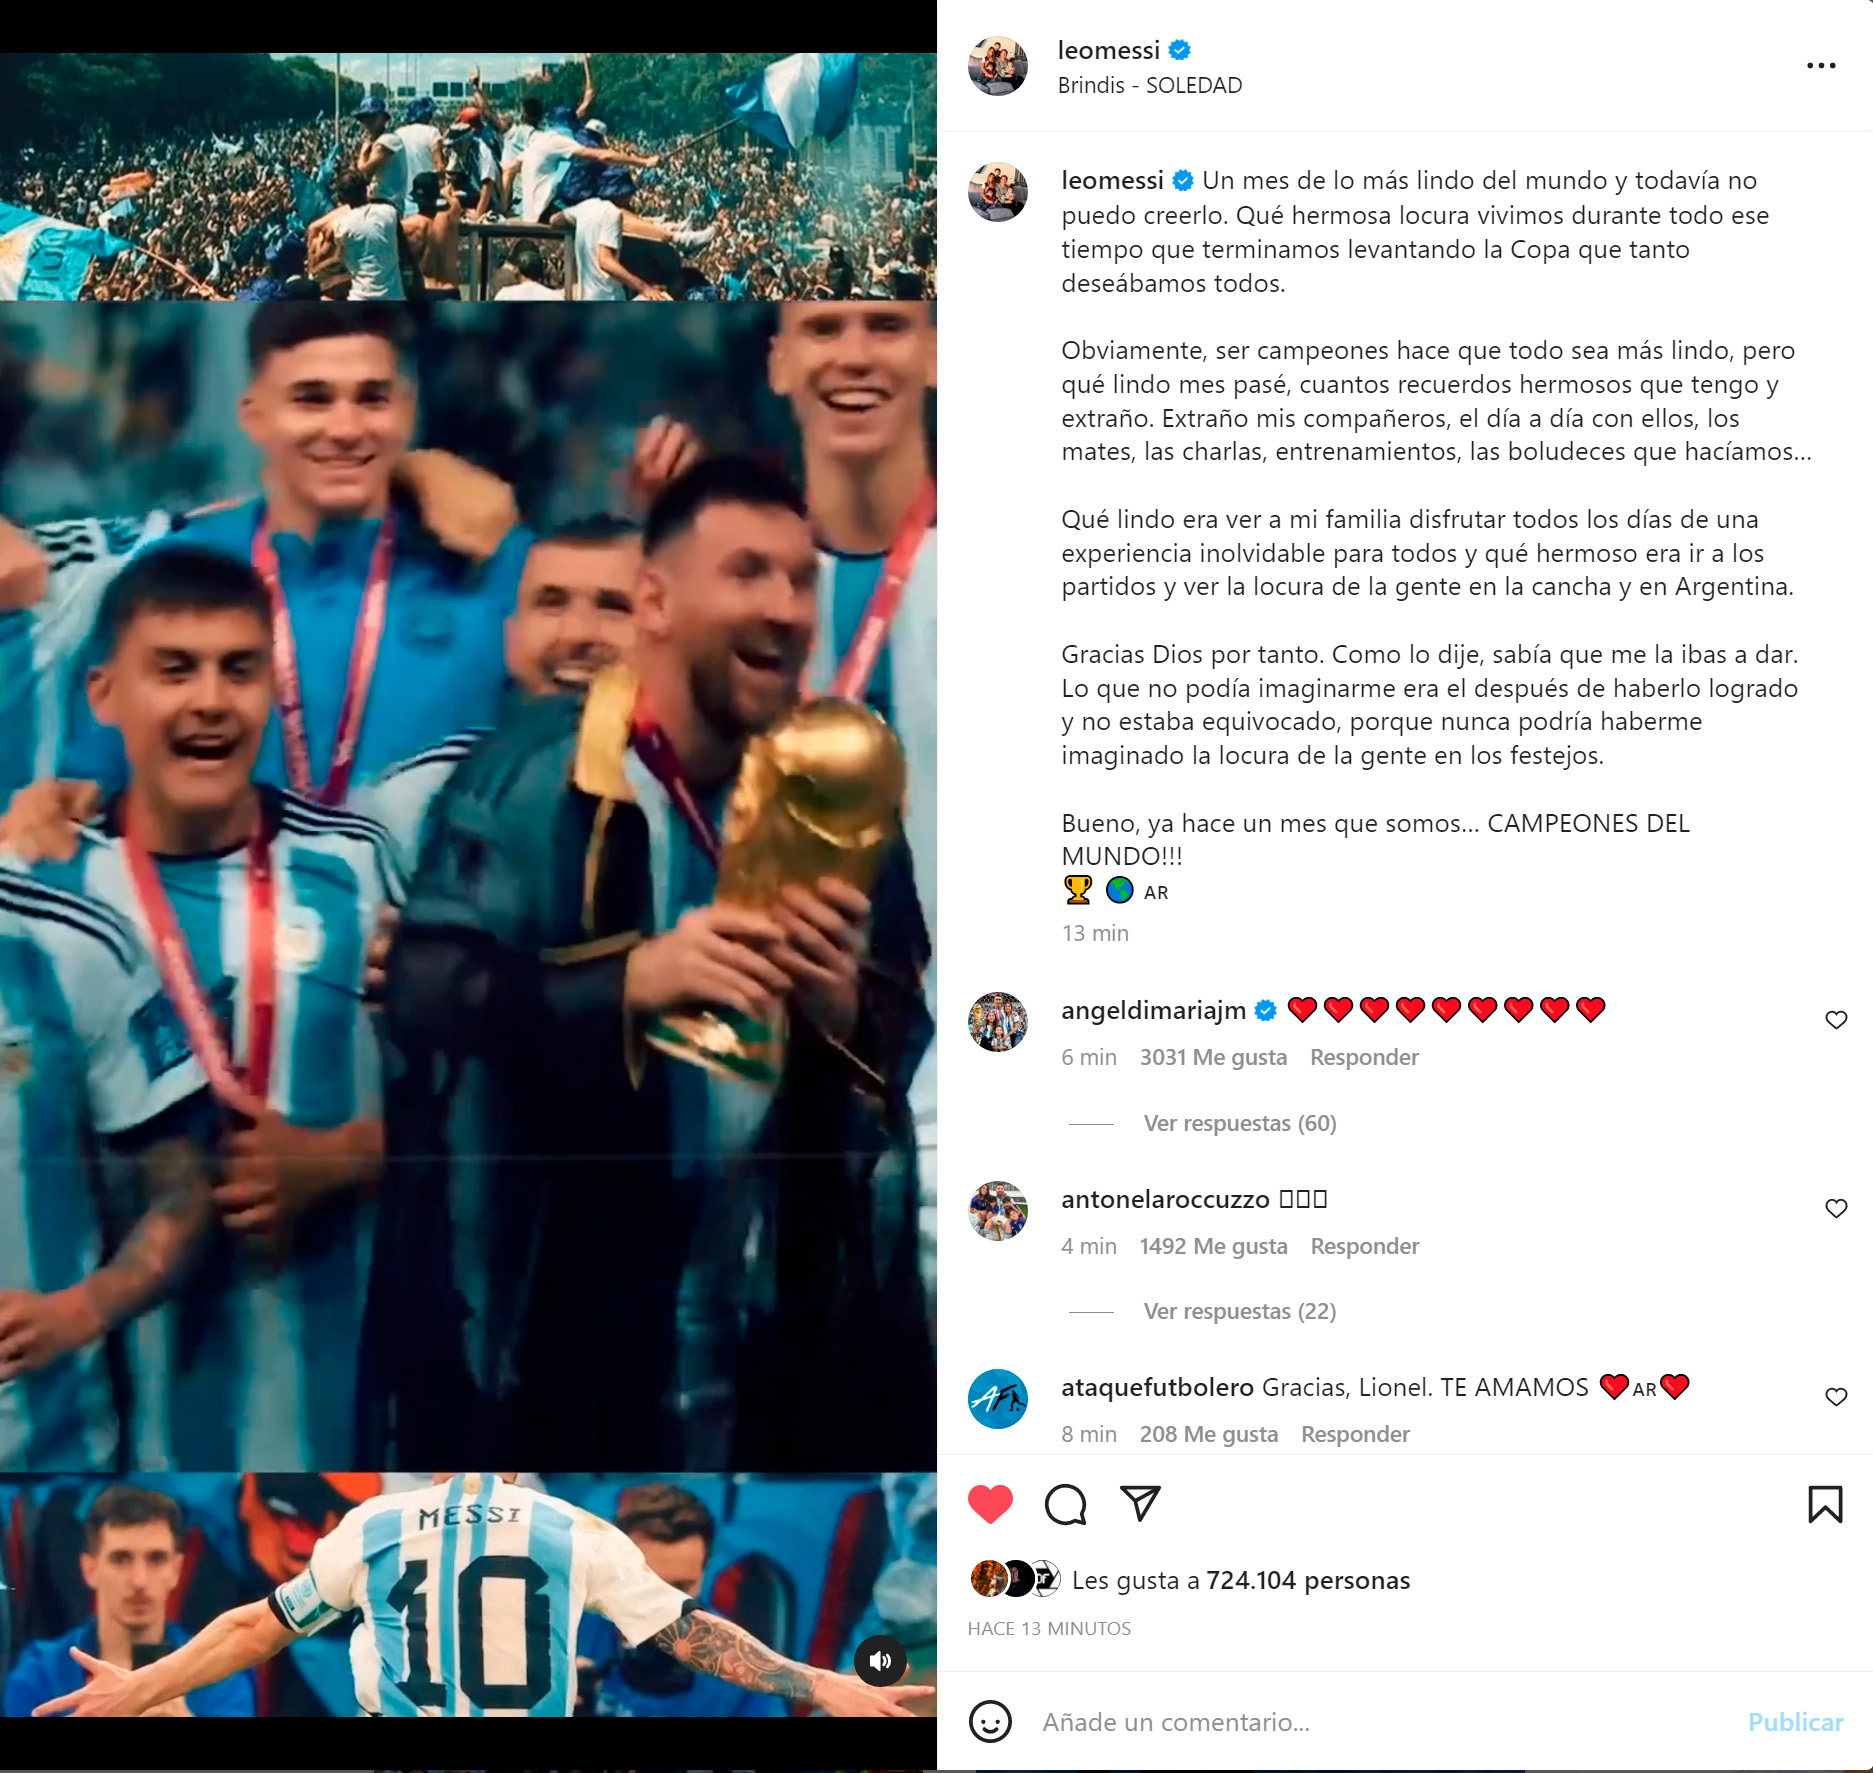 El posteo de Lionel Messi en Instagram, un mes del campeonato mundial de Argentina en Qatar